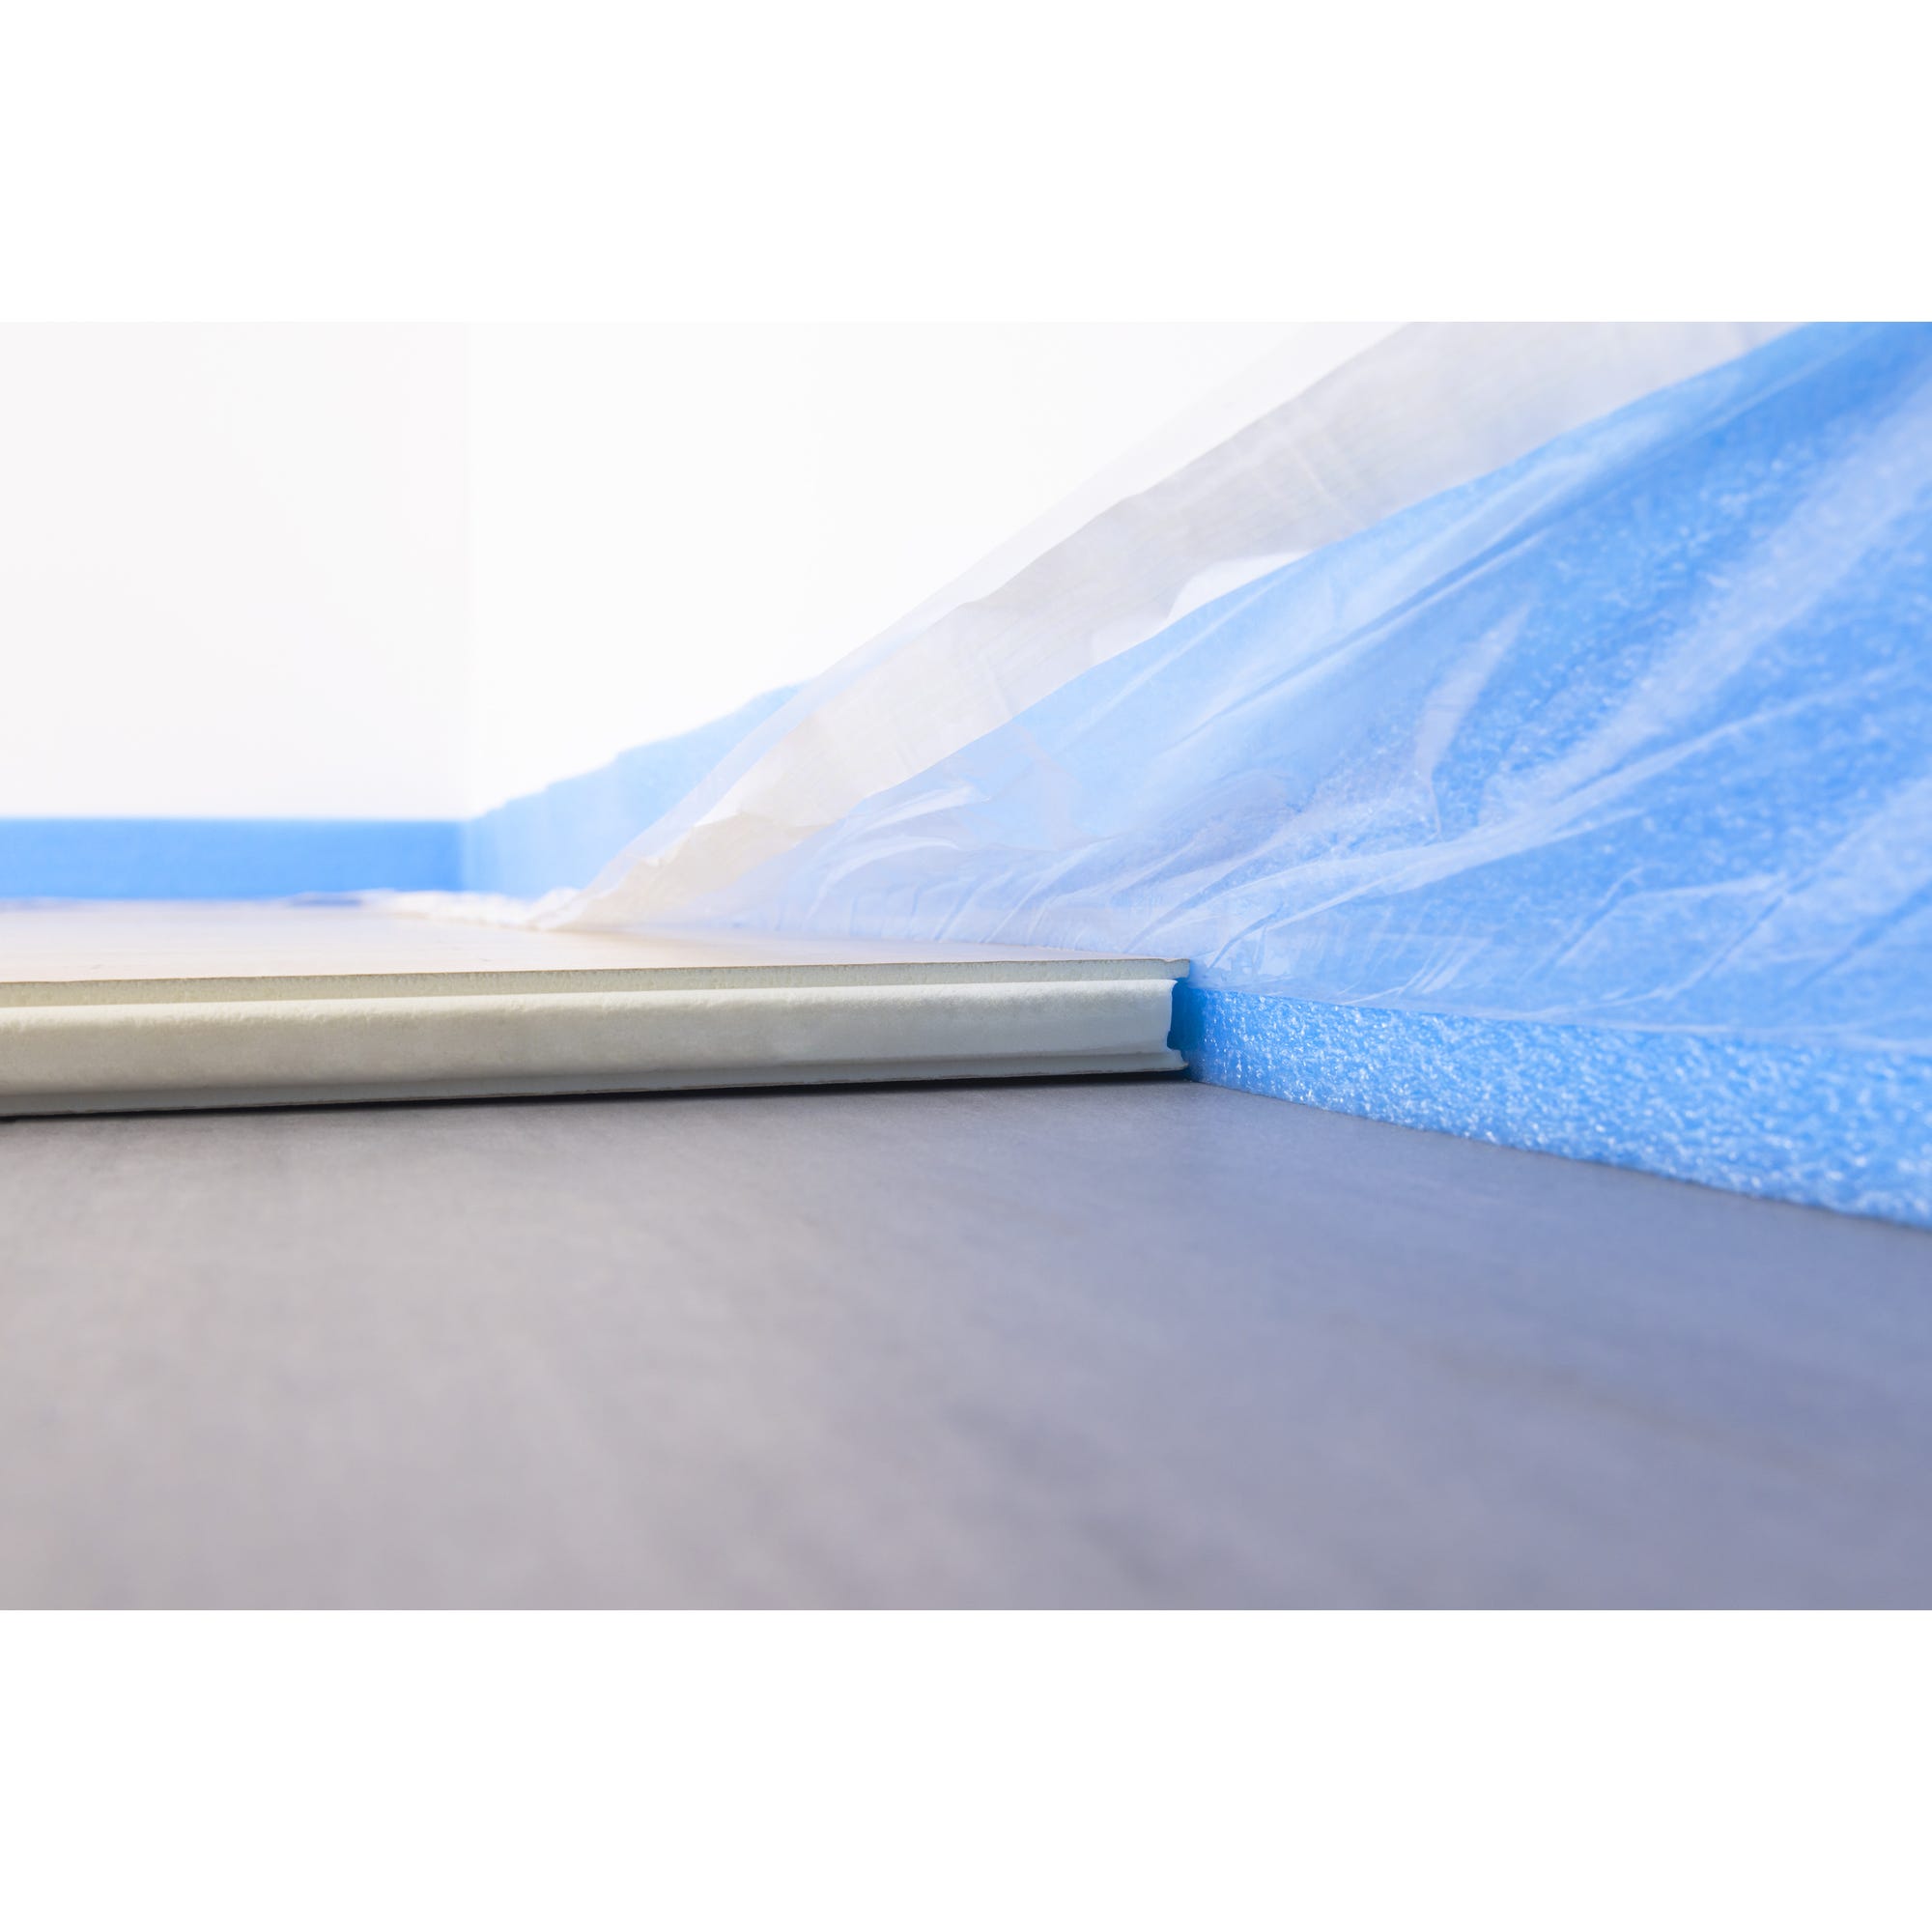 Dalle plancher chauffant épaisseur 120 millimètres R5.45 - paquet de 4 dalles - 4.8 m2 4